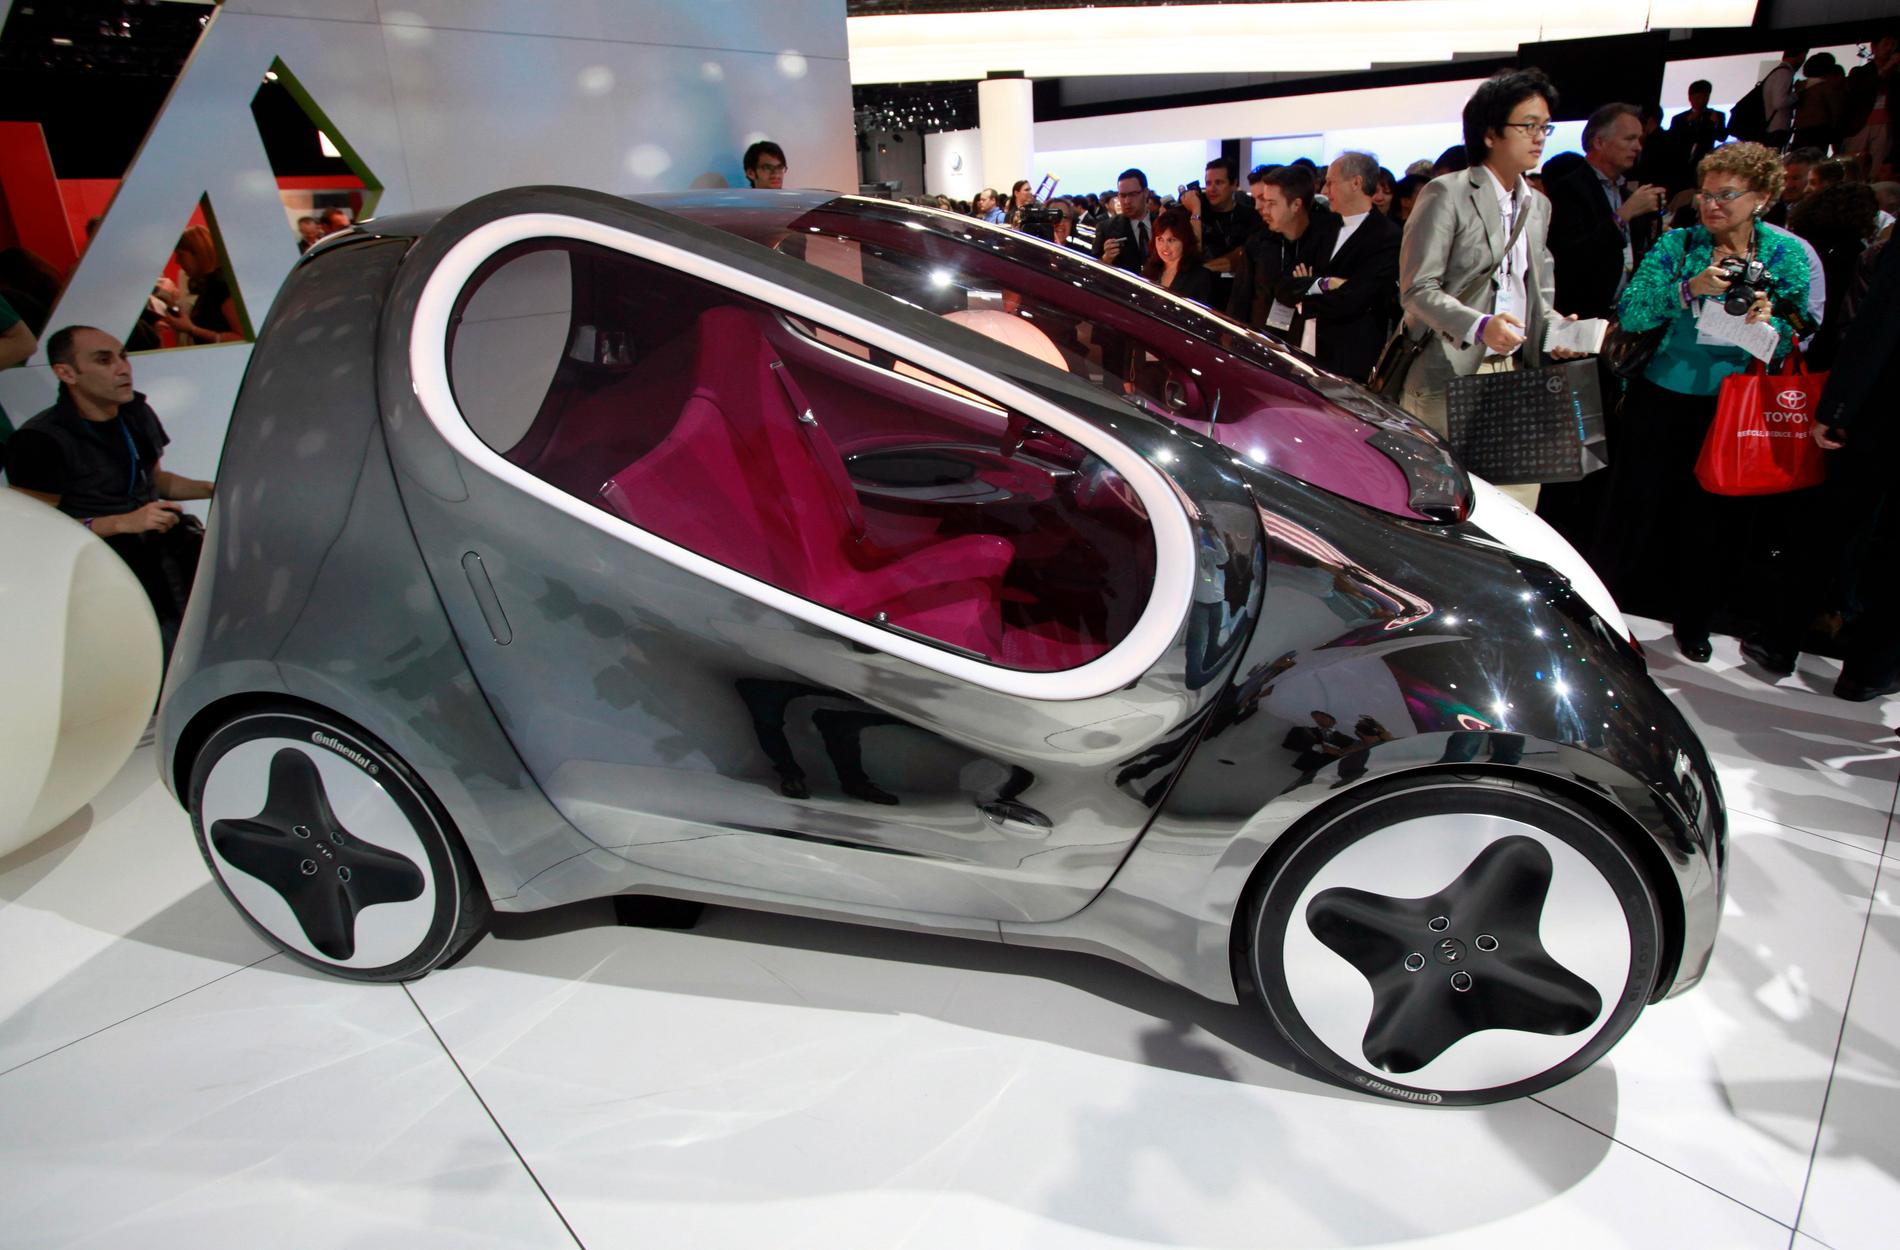 Den här elbilen visade Kia upp 2010. Nu sägs den sydkoreanska biltillverkaren vara beredd att tillverka Apples kommande självkörande elbil. Arkivbild.